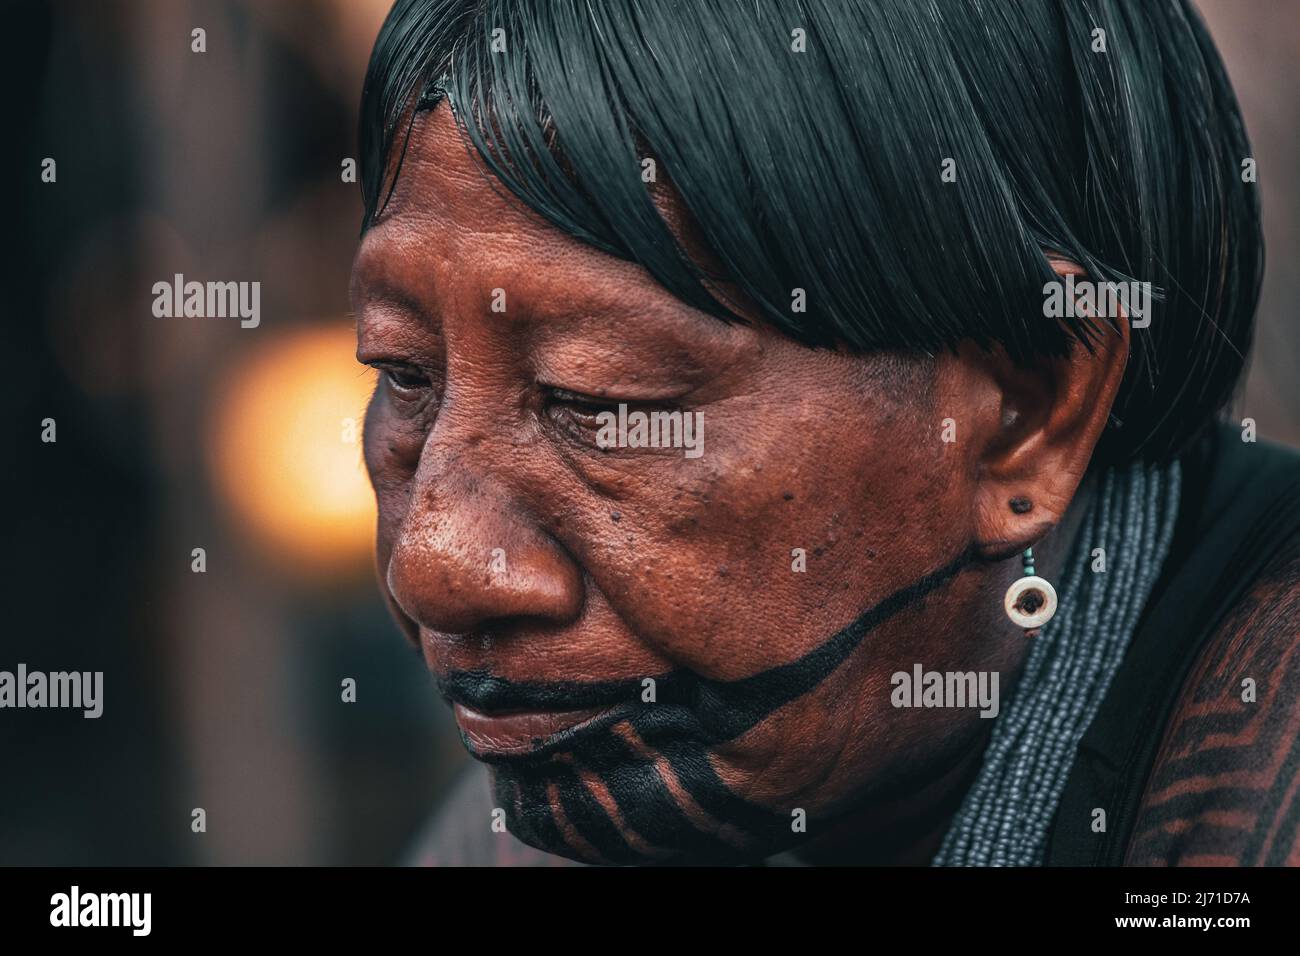 Femme indigène portant une peinture de visage tribale. Amazonie brésilienne, 2010. Banque D'Images